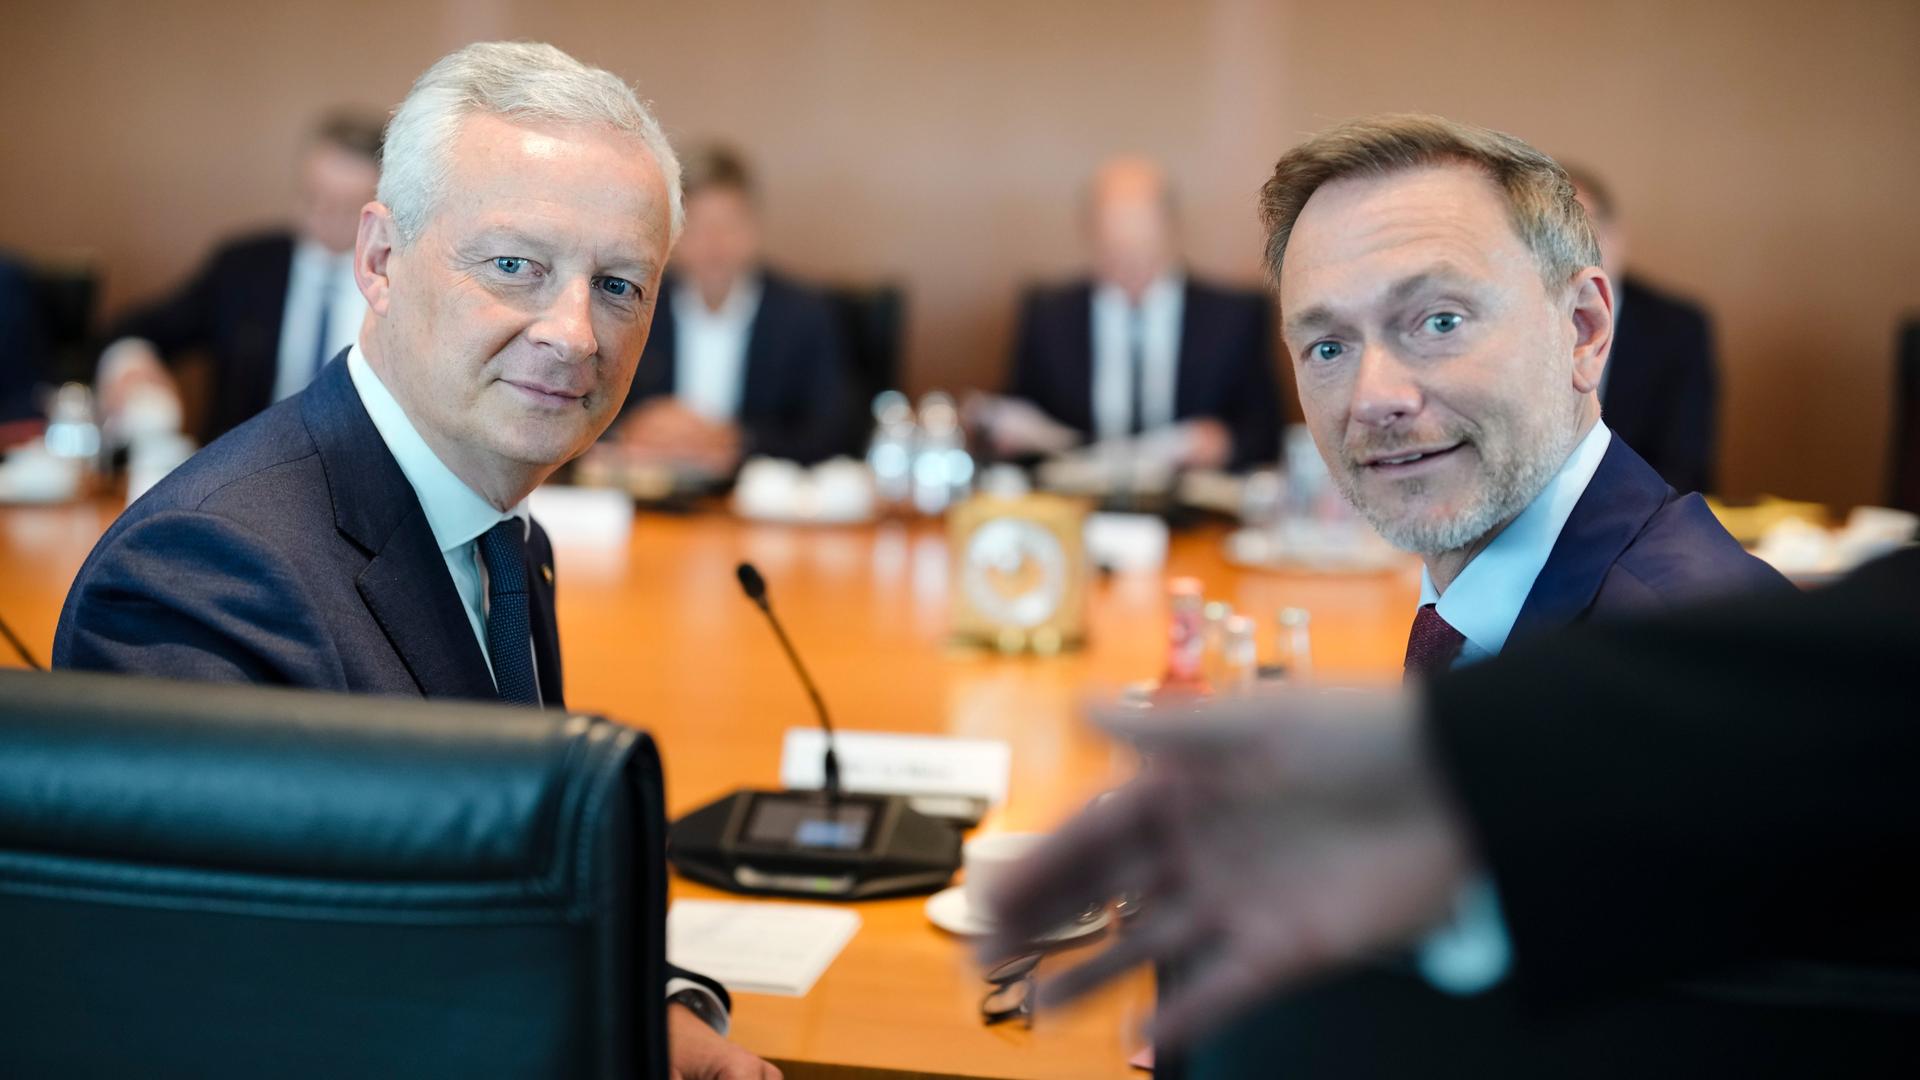 Der französische Wirtschafts- und Finanzminister Bruno Le Maire sitzt mit dem deutschen Finanzminister Christian Lindner nebeneinander an einem Tisch. Hinter ihnen auf der Tischplatte steht ein Mikrofon.